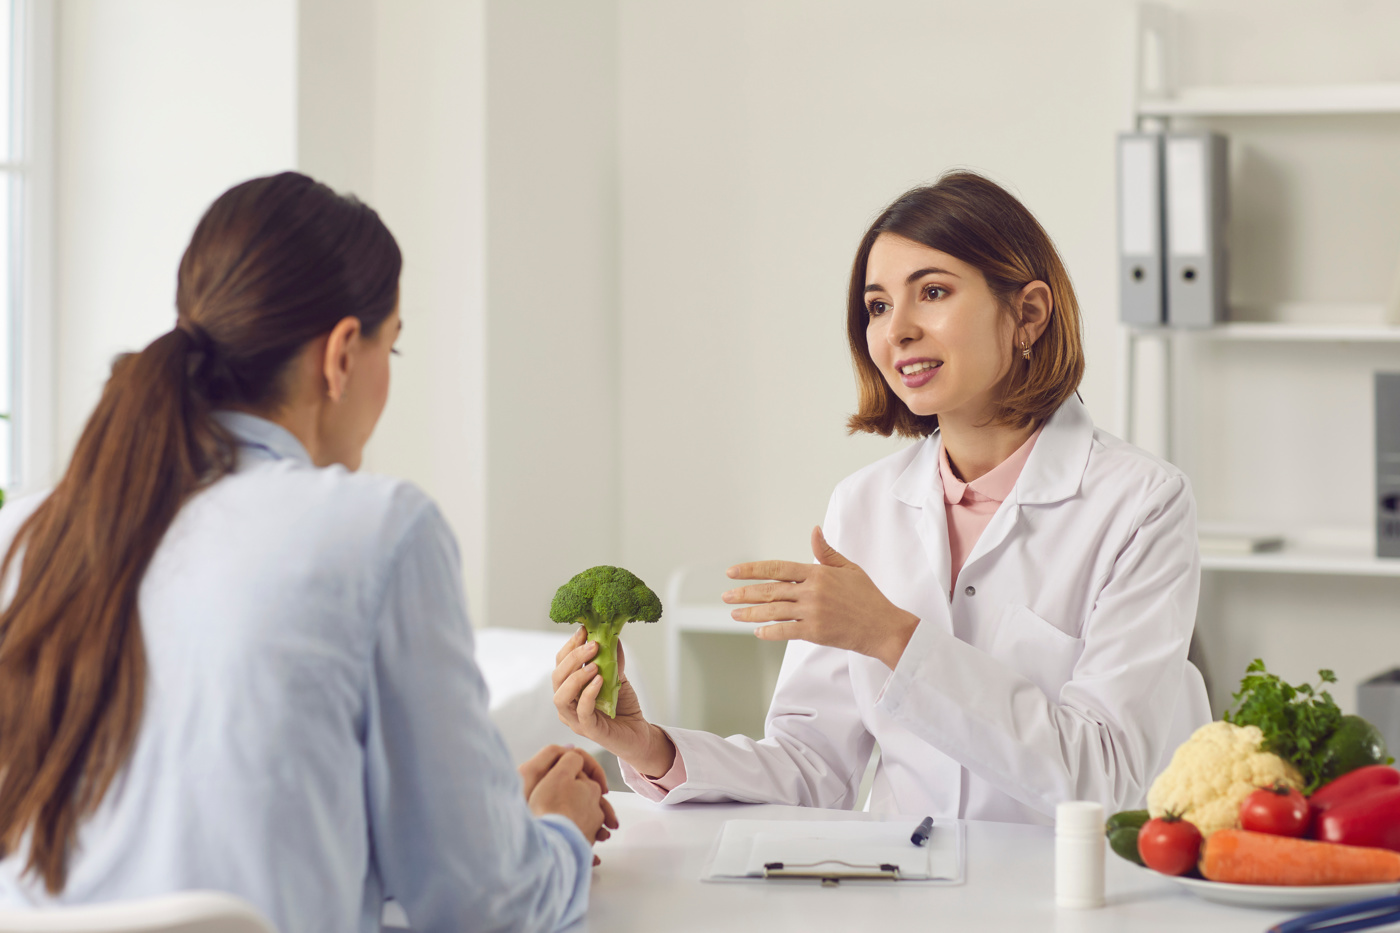 Une diététicienne montre à une cliente les avantages d'une alimentation saine et consciente.